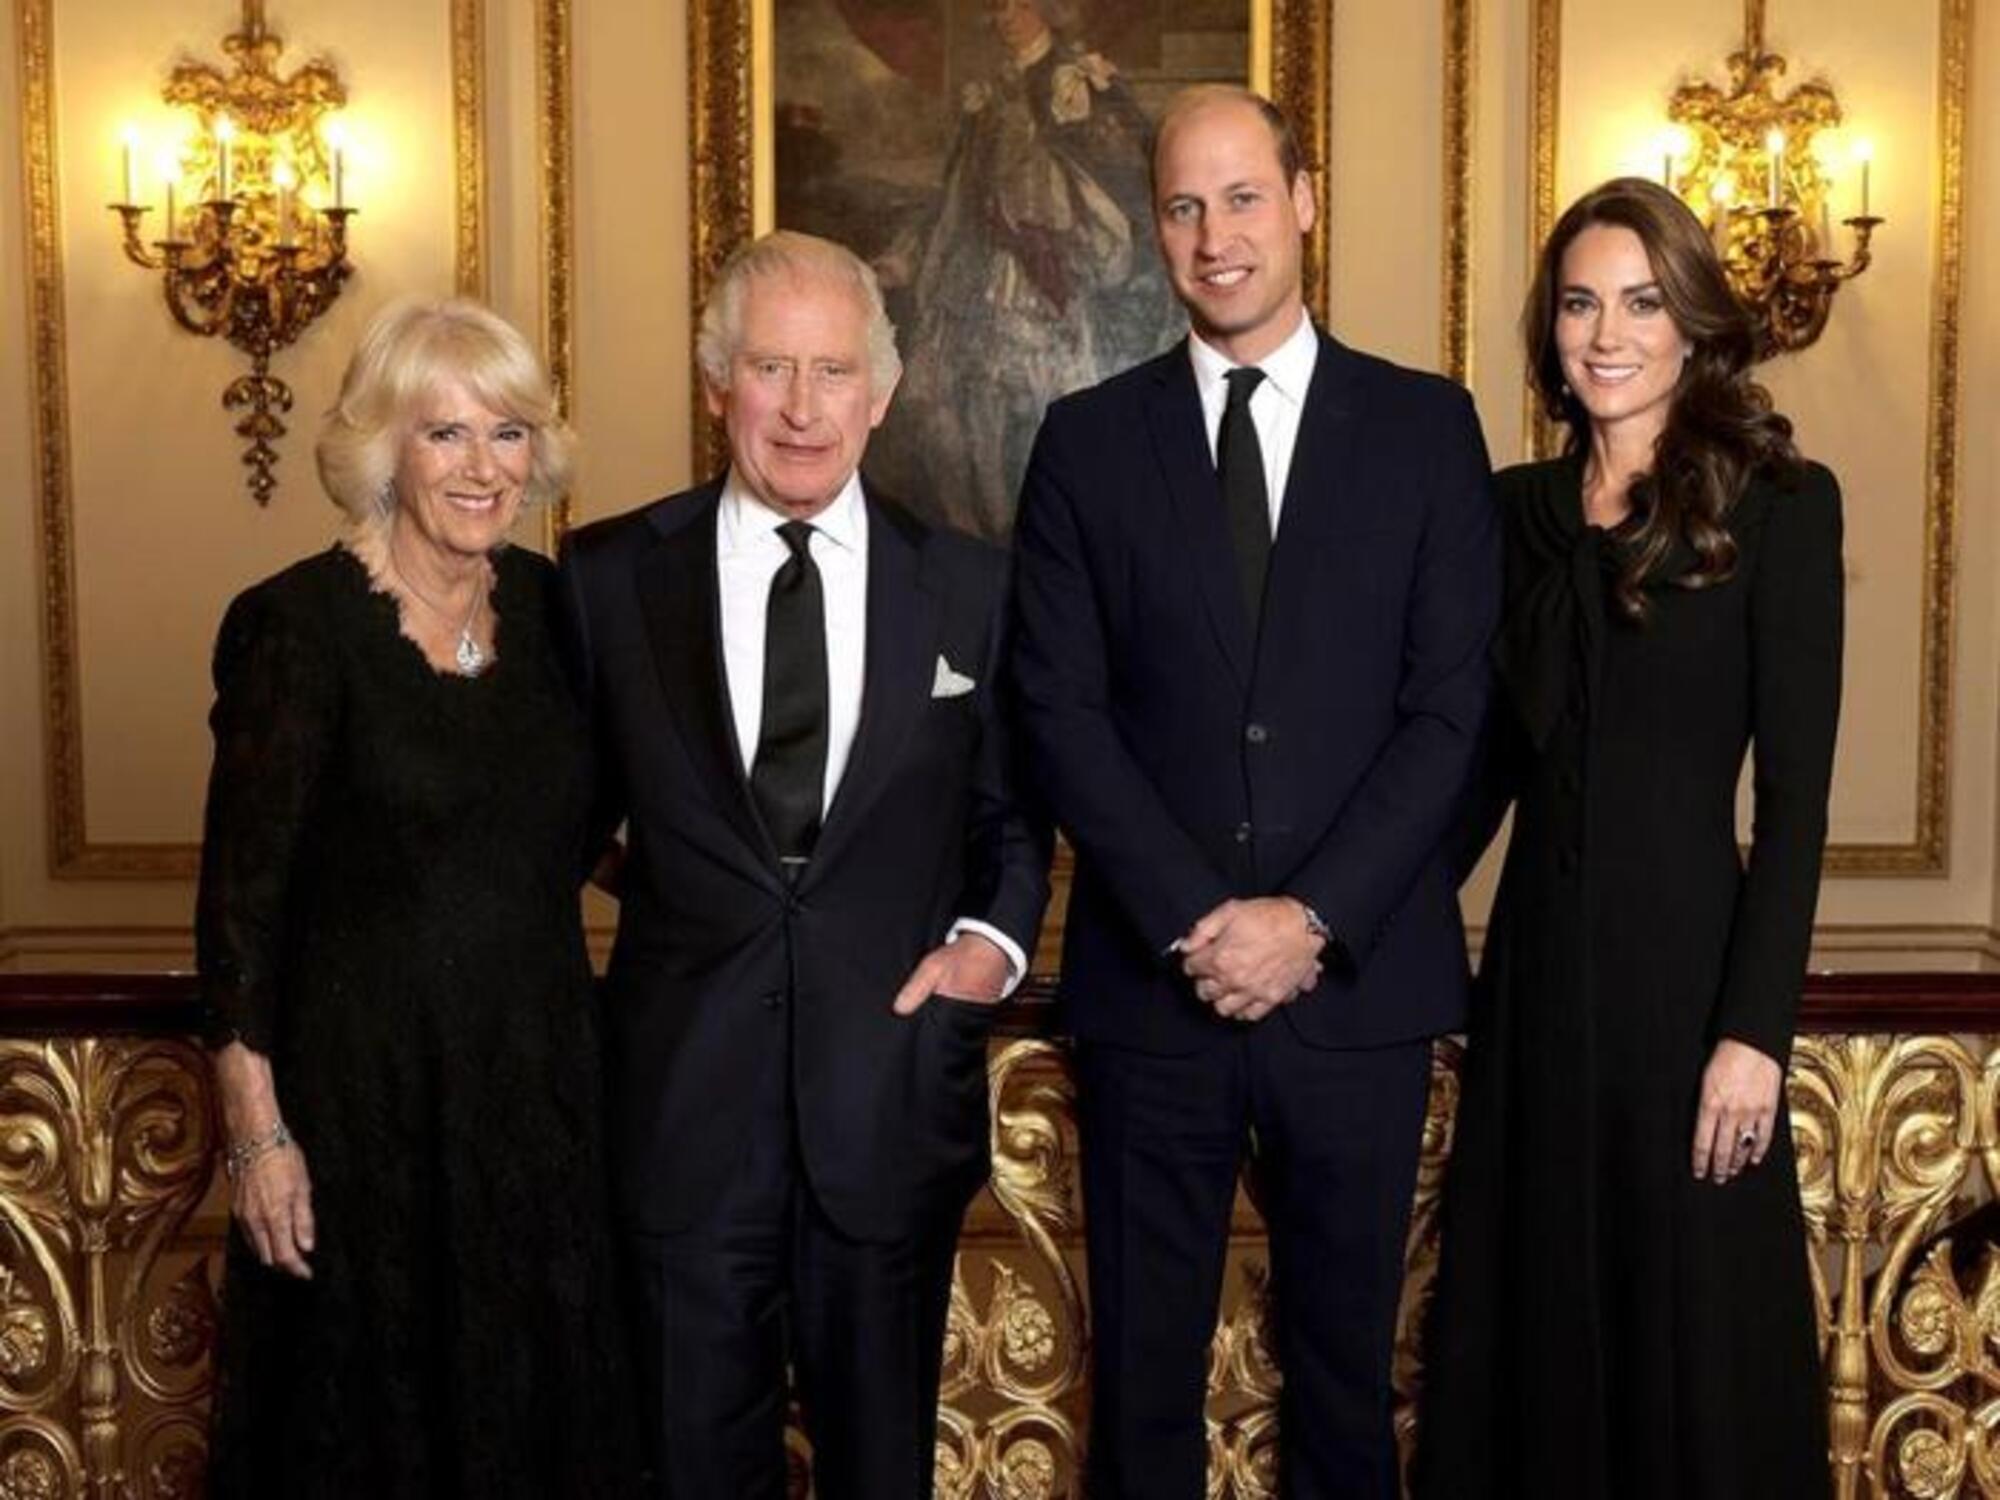 La famiglia reale inglese: Re Carlo, sua moglie Camilla, il principe William e la principessa Kate Middleton